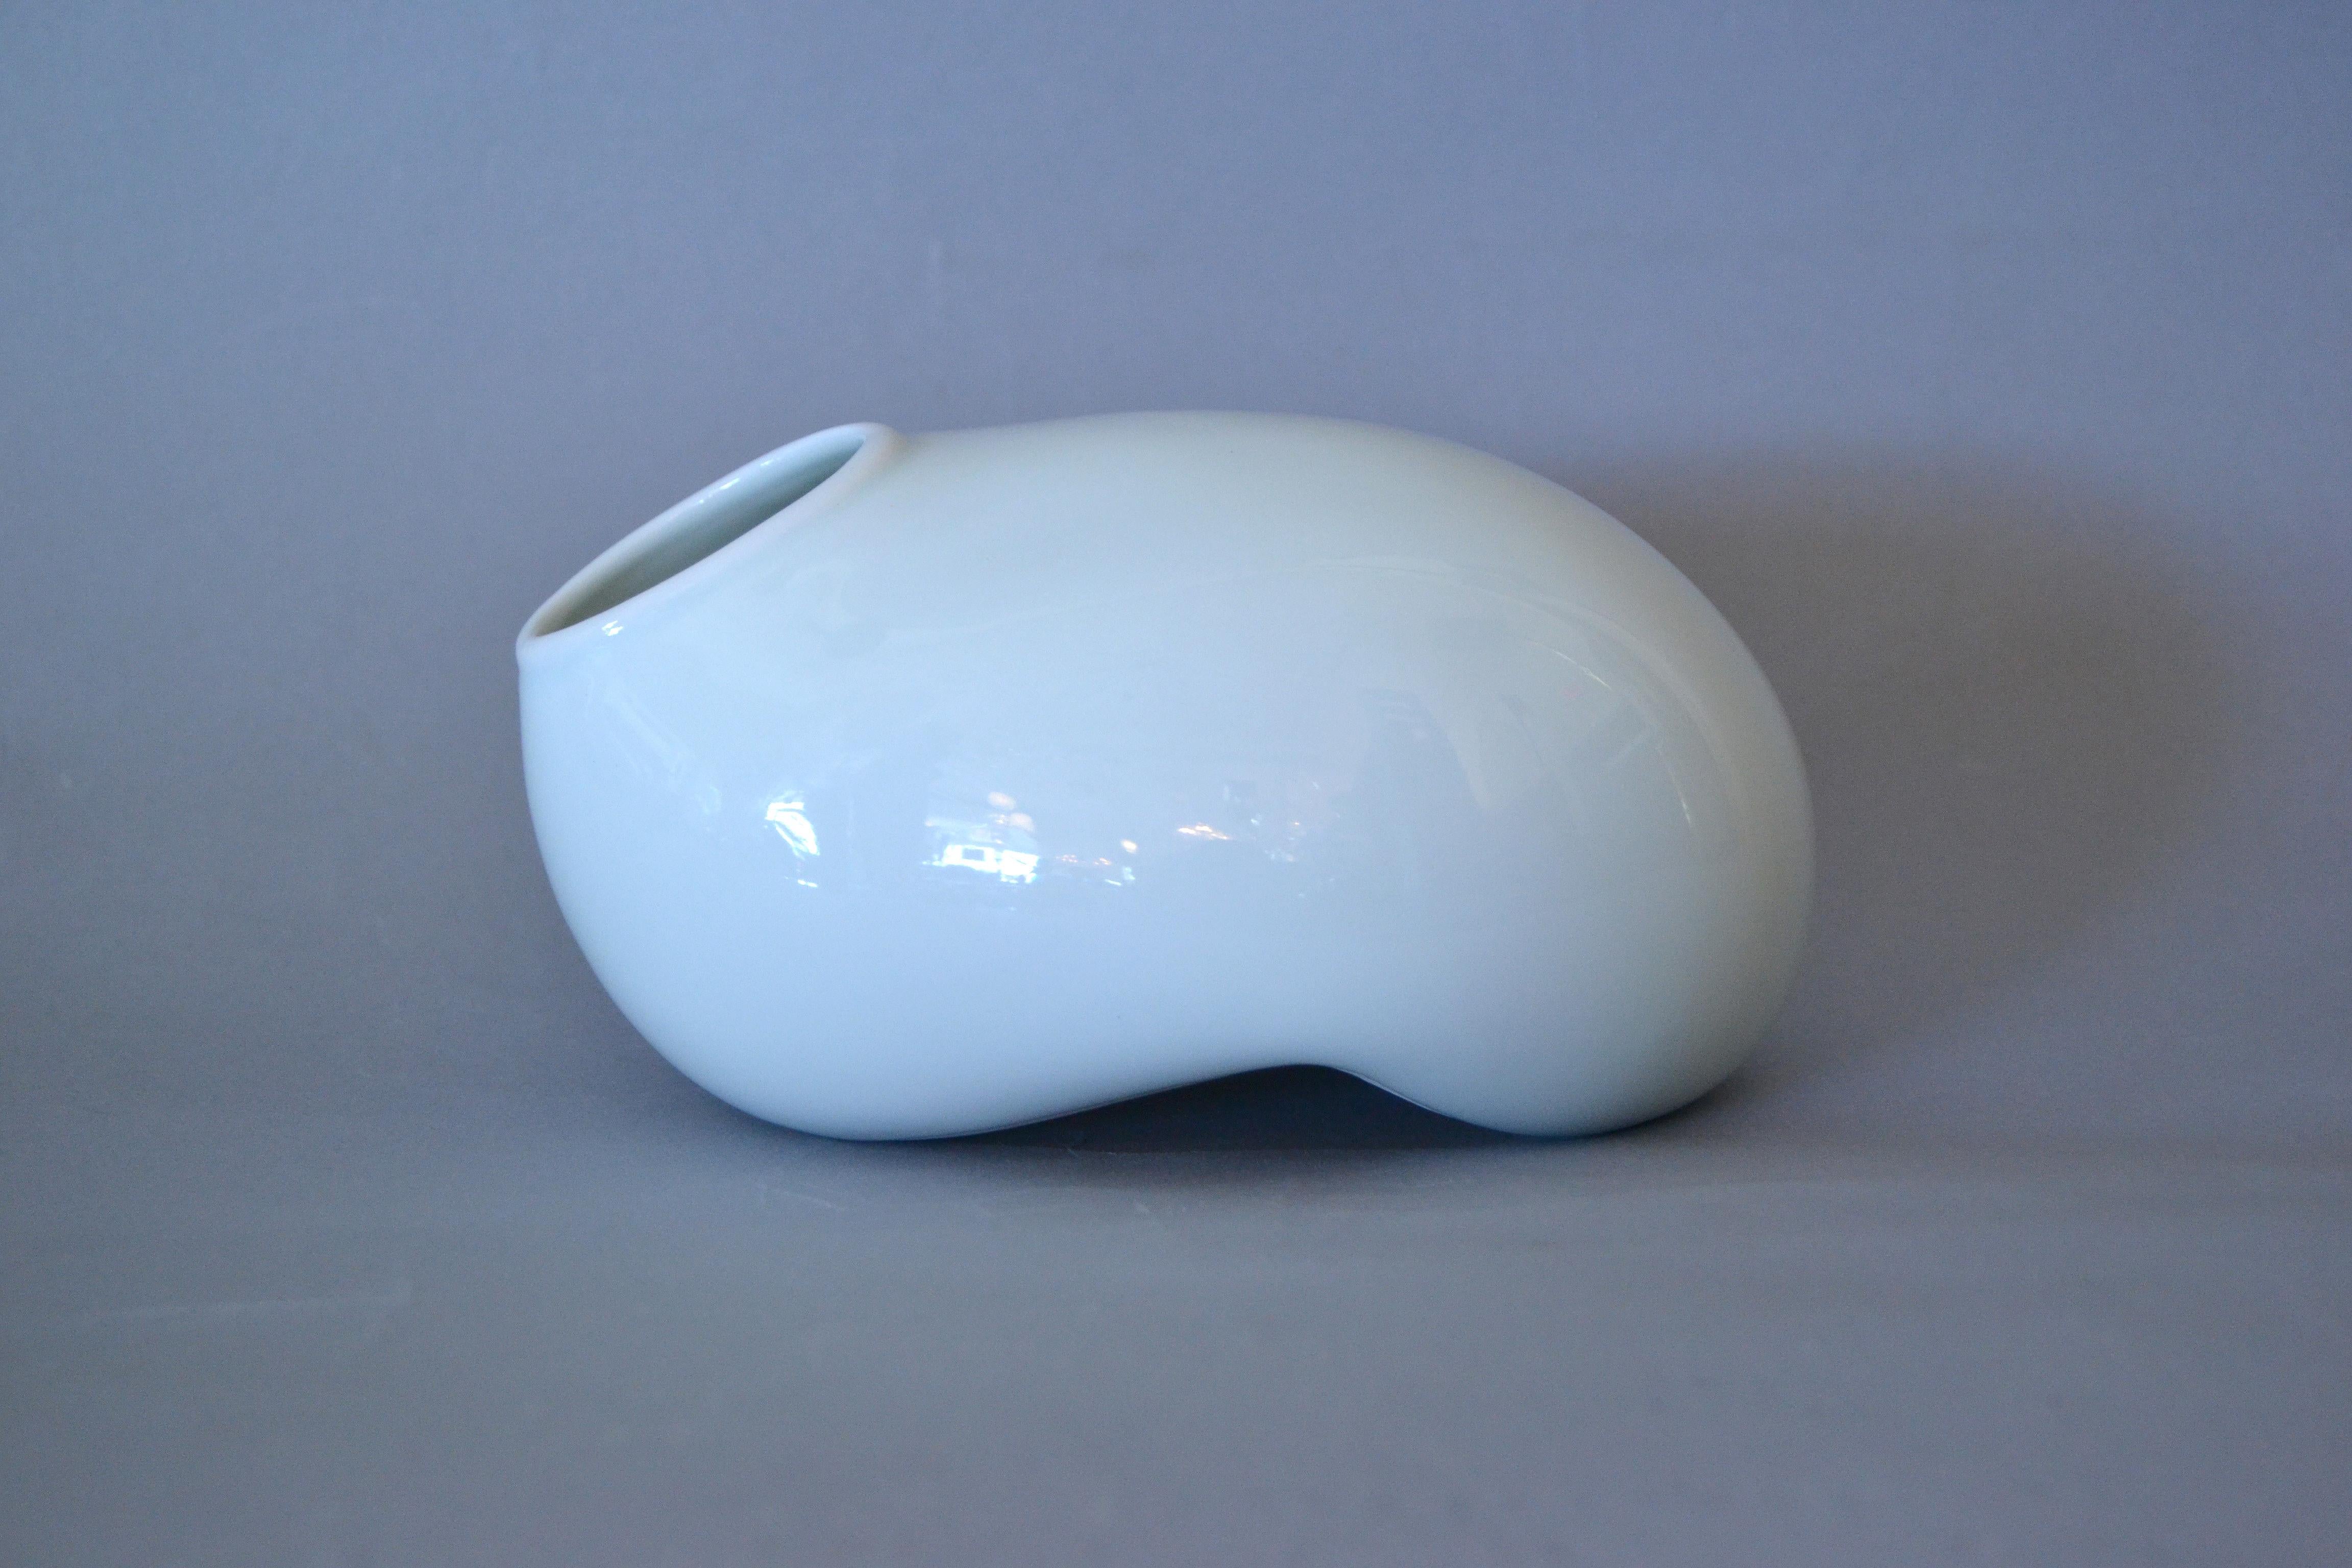 Organic Modern Organic Asian Modern White Ceramic Water Bag Vase Made by Spin Ceramics Shanghai